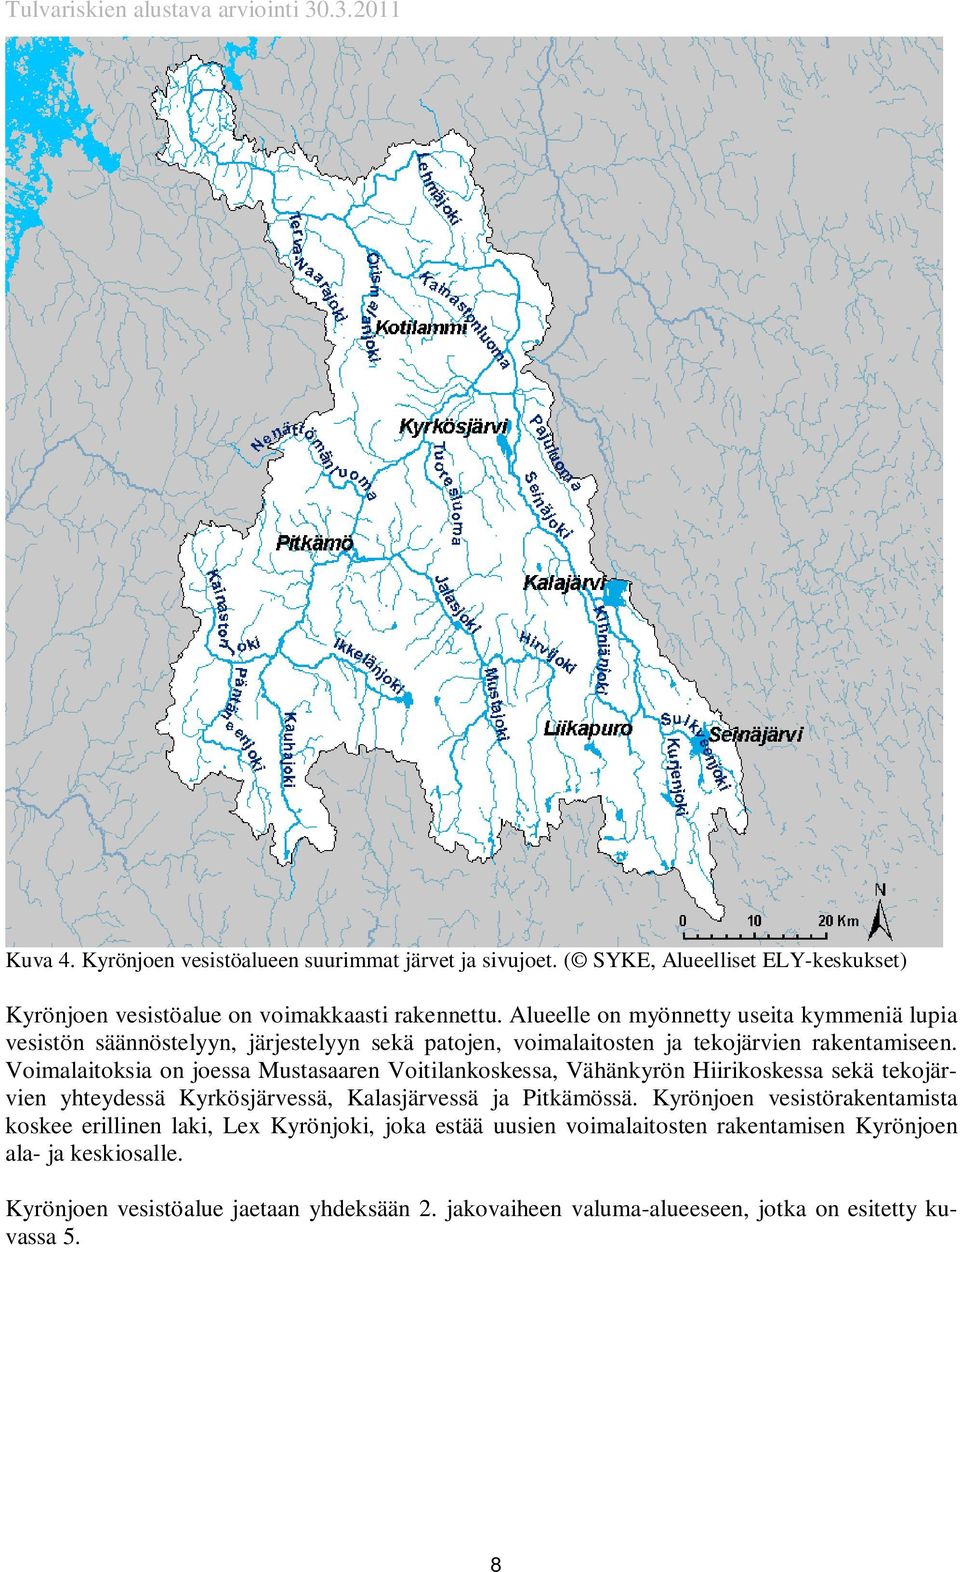 Voimalaitoksia on joessa Mustasaaren Voitilankoskessa, Vähänkyrön Hiirikoskessa sekä tekojärvien yhteydessä Kyrkösjärvessä, Kalasjärvessä ja Pitkämössä.